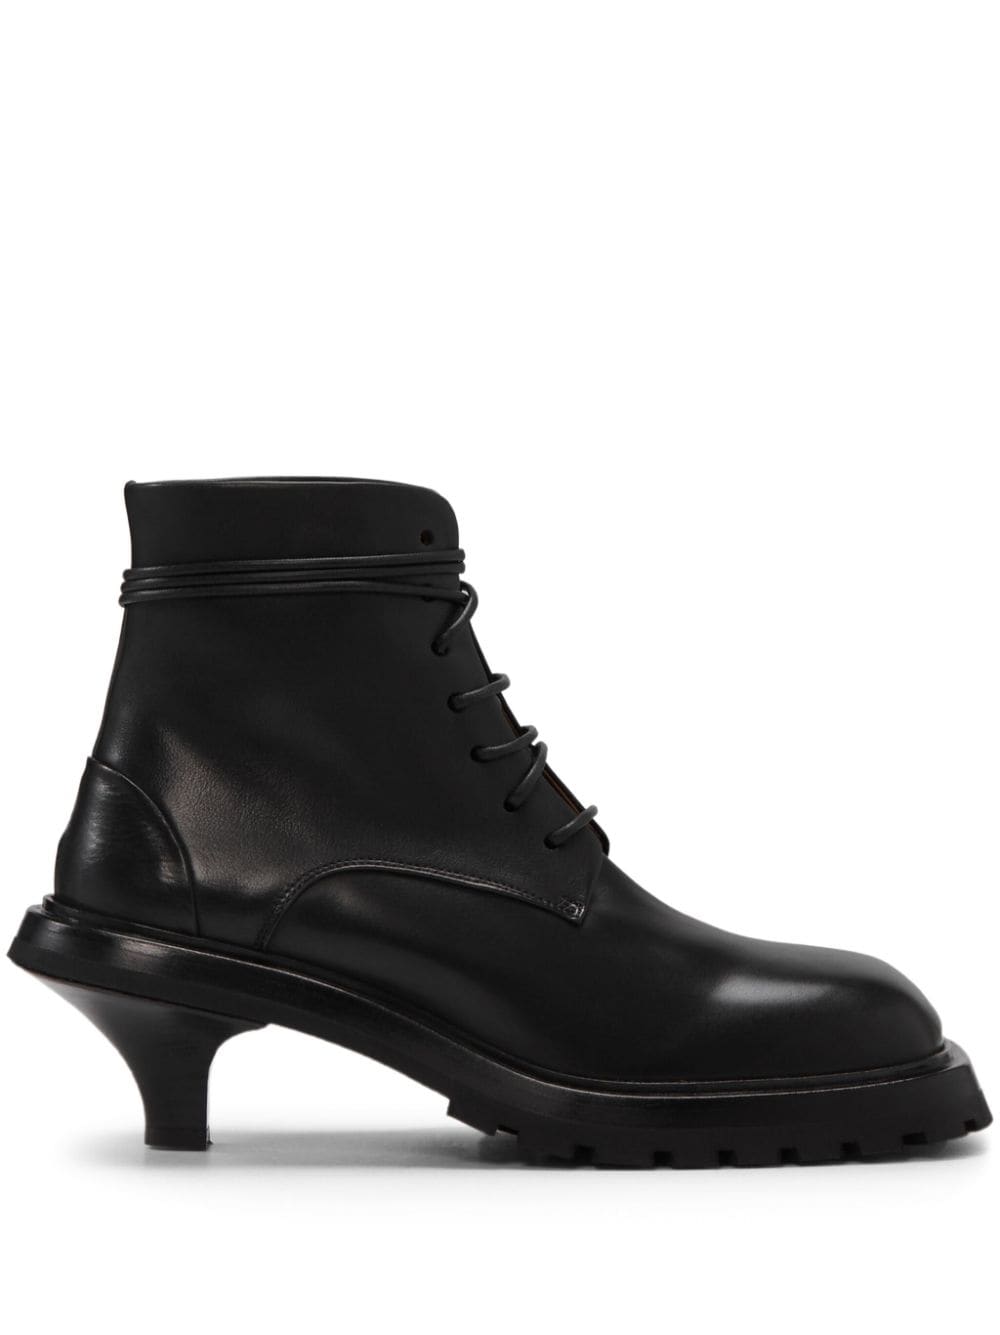 Marsèll Trillo 50mm leather boots - Black von Marsèll